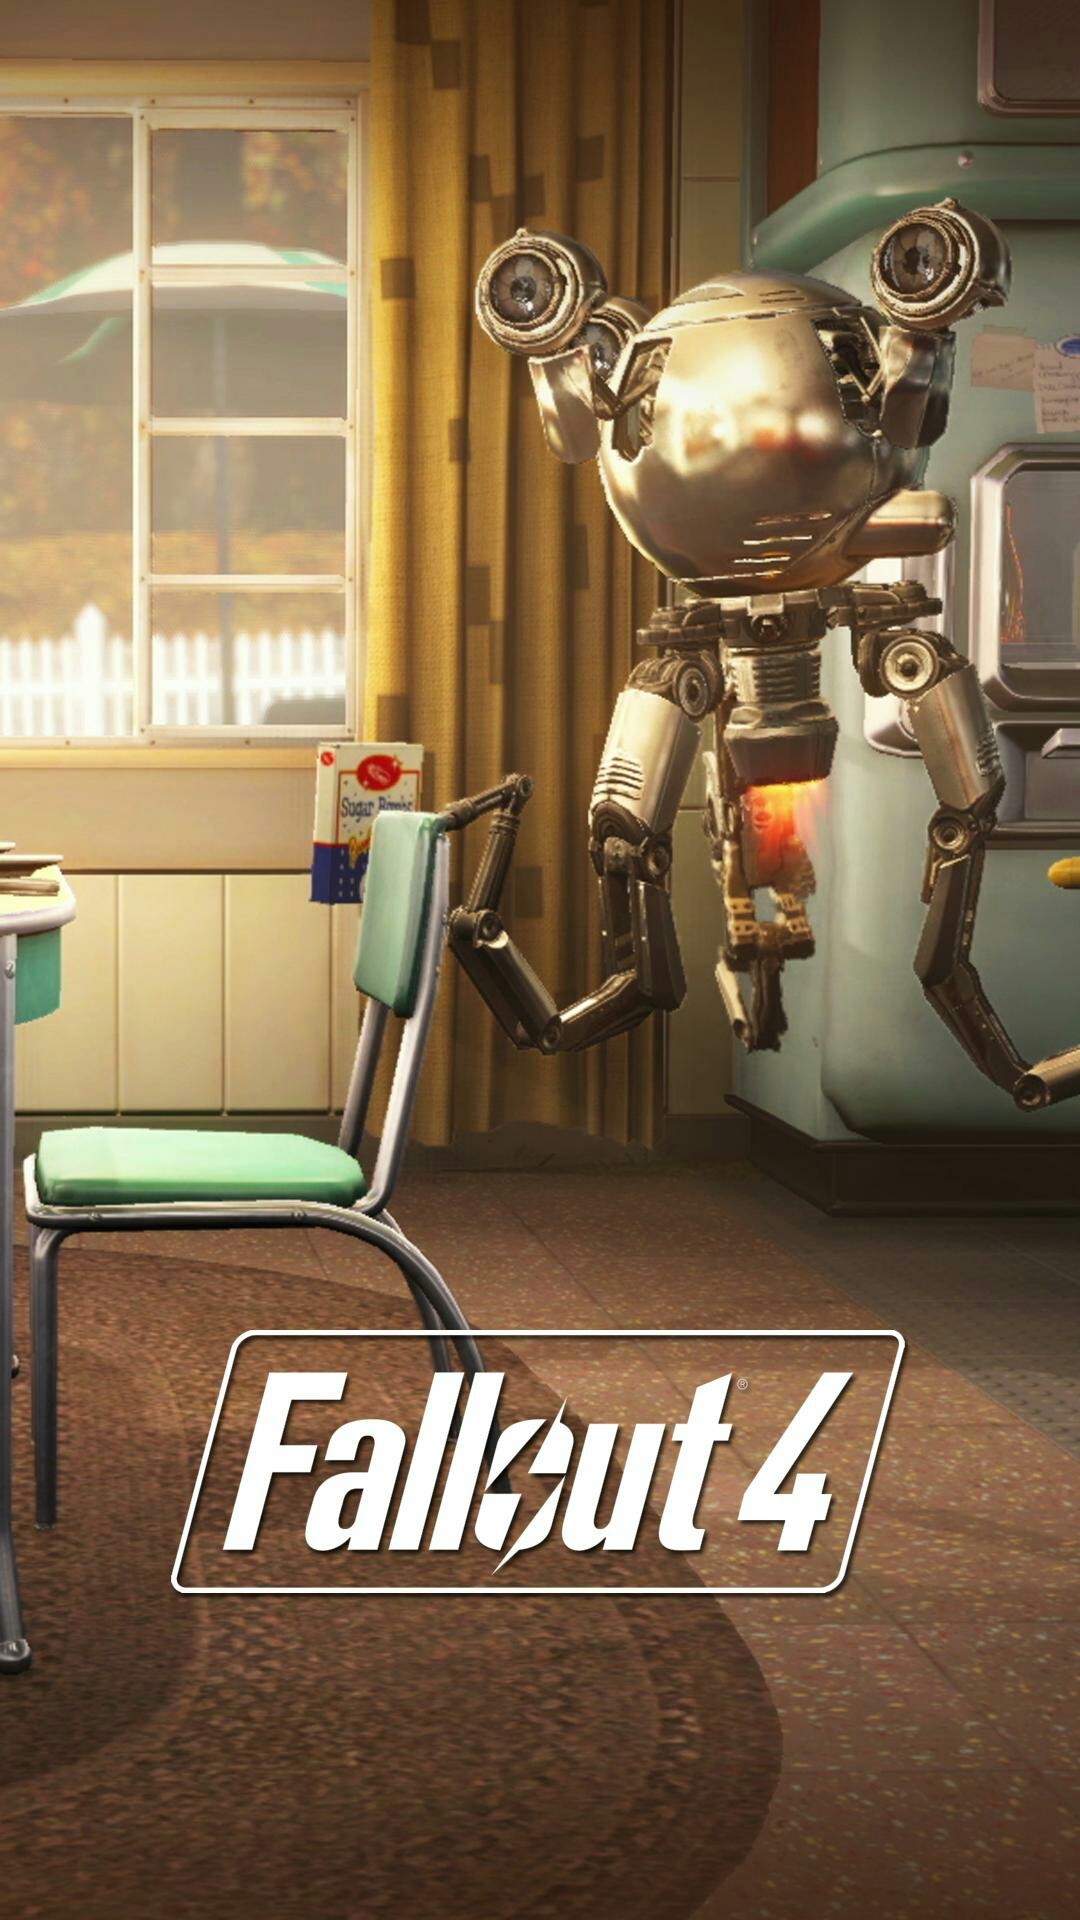 1080x1920 Fallout 4 Mr gutsy robot mobile phone wallpaper